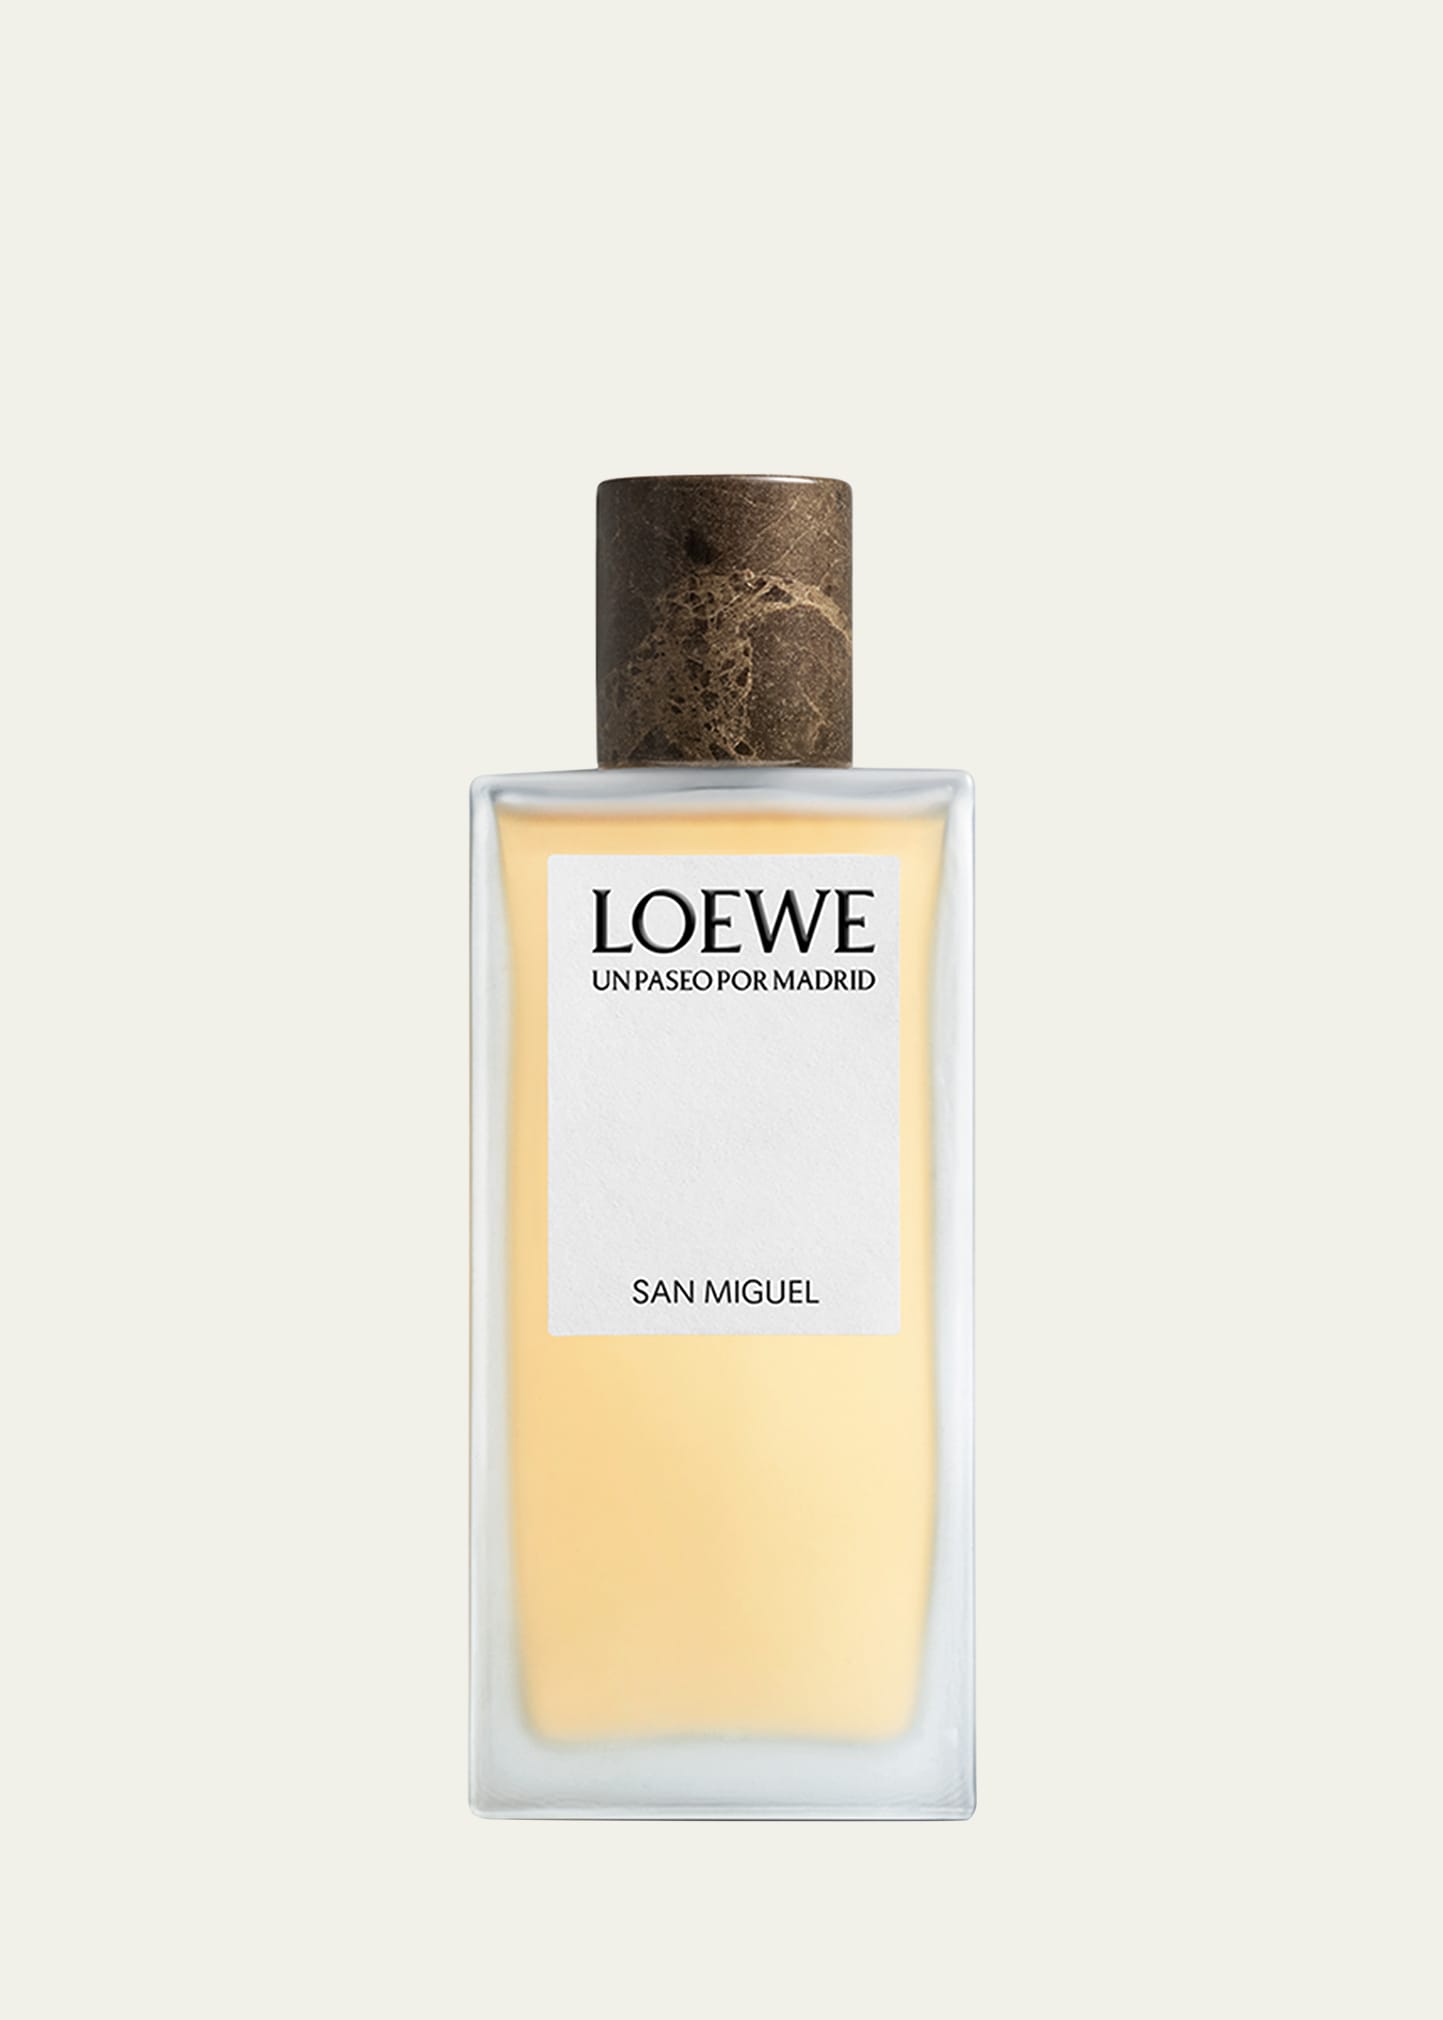 Loewe Un Paseo Por Madrid San Miguel Eau De Parfum, 3.4 Oz. In White